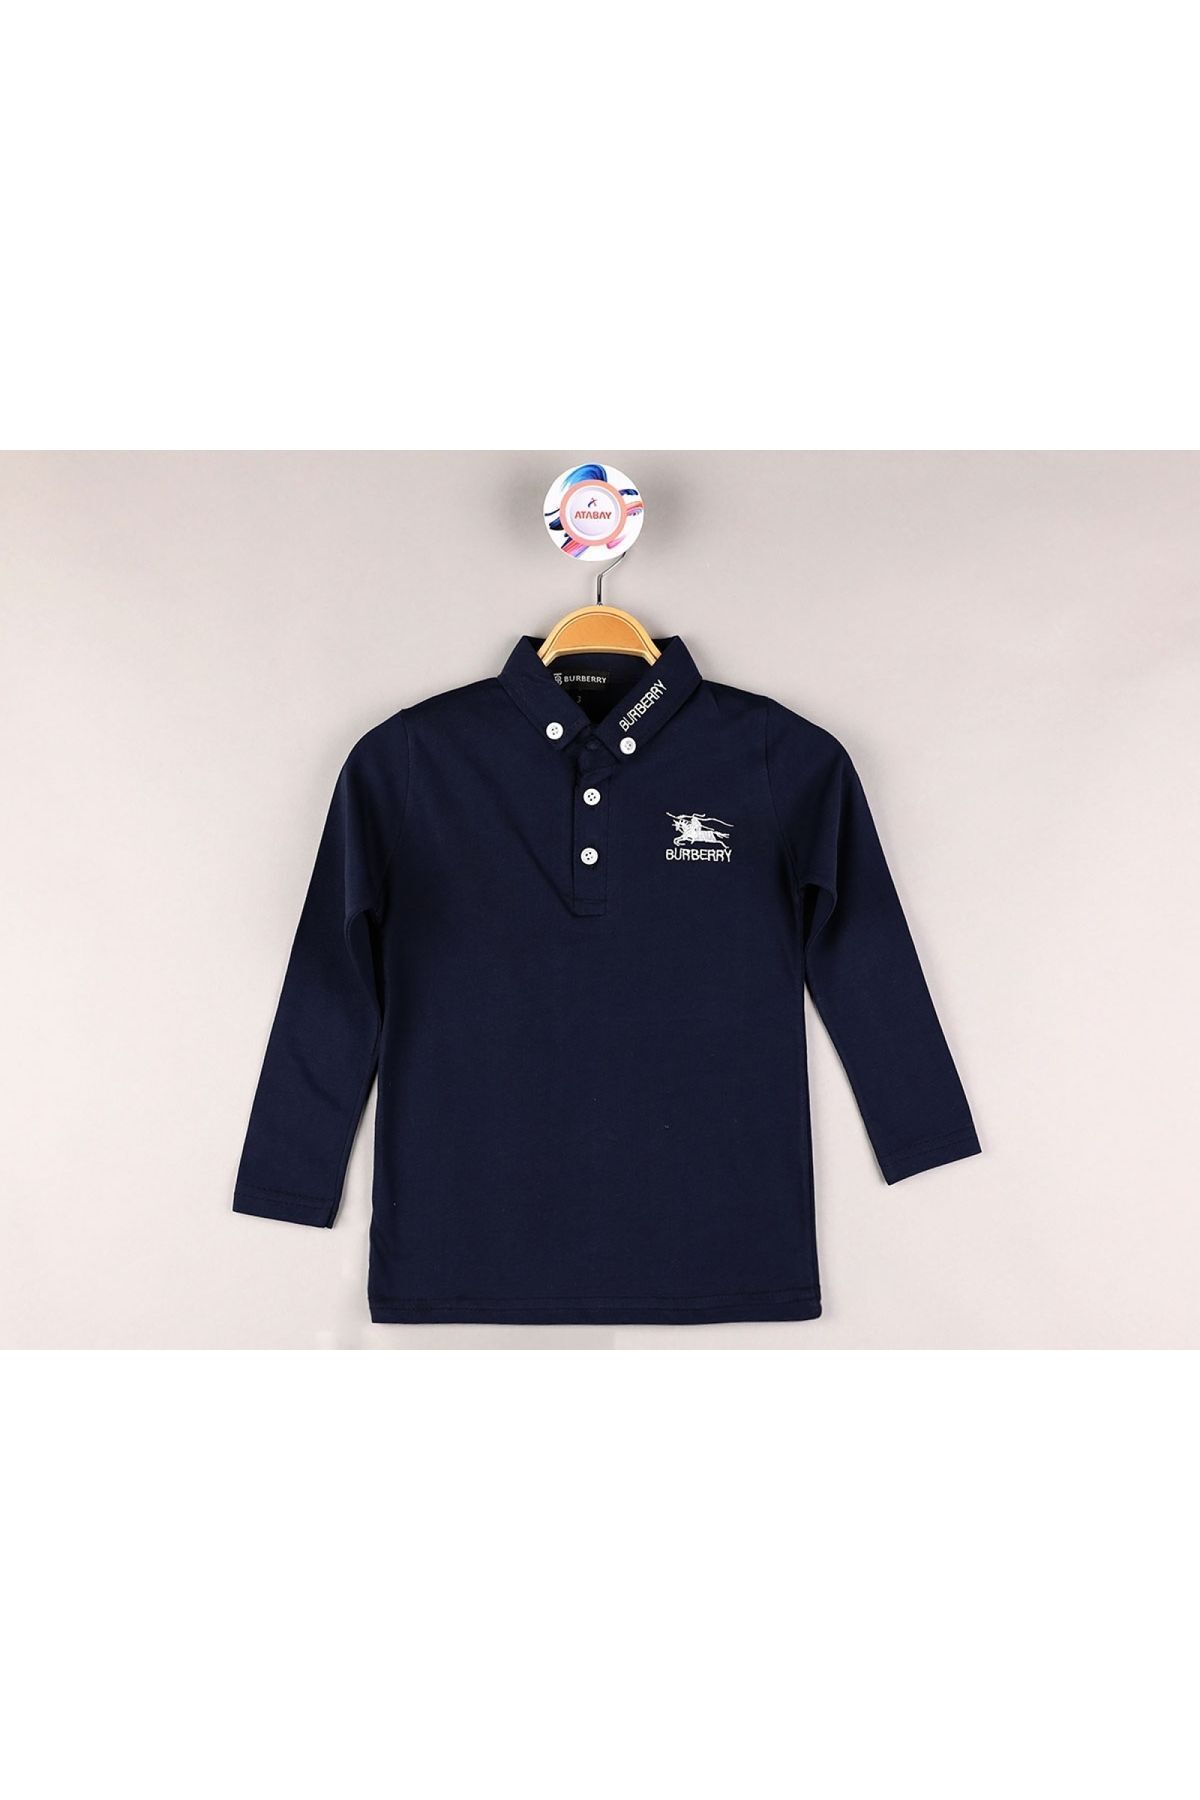 Atabay Kids Digidi Kıds Erkek Çocuk Lacivert Polo Yaka Yazılı Uzun Kollu Bluz